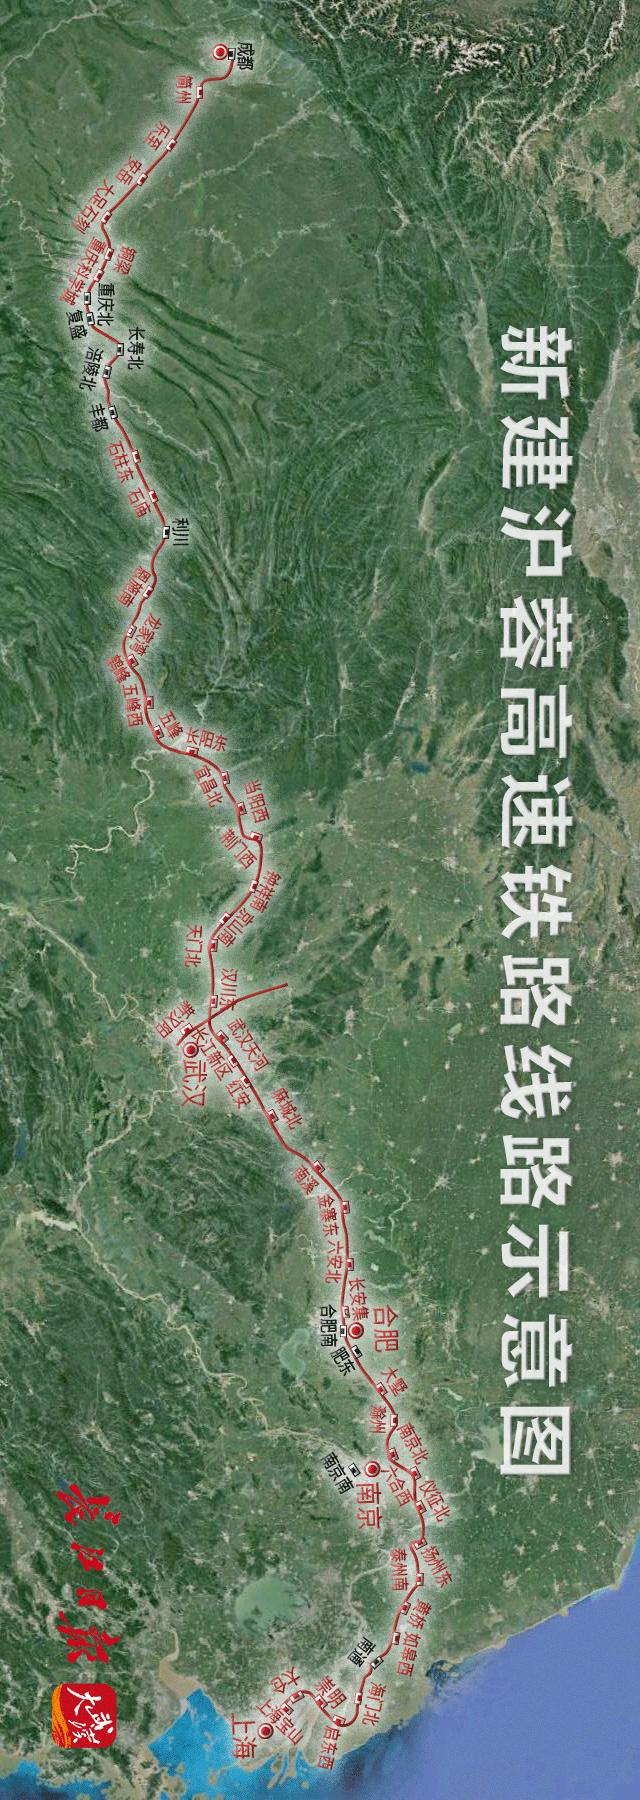 沿江高铁湖北段由合肥至武汉,武汉枢纽直通线,武汉至宜昌,宜昌至涪陵